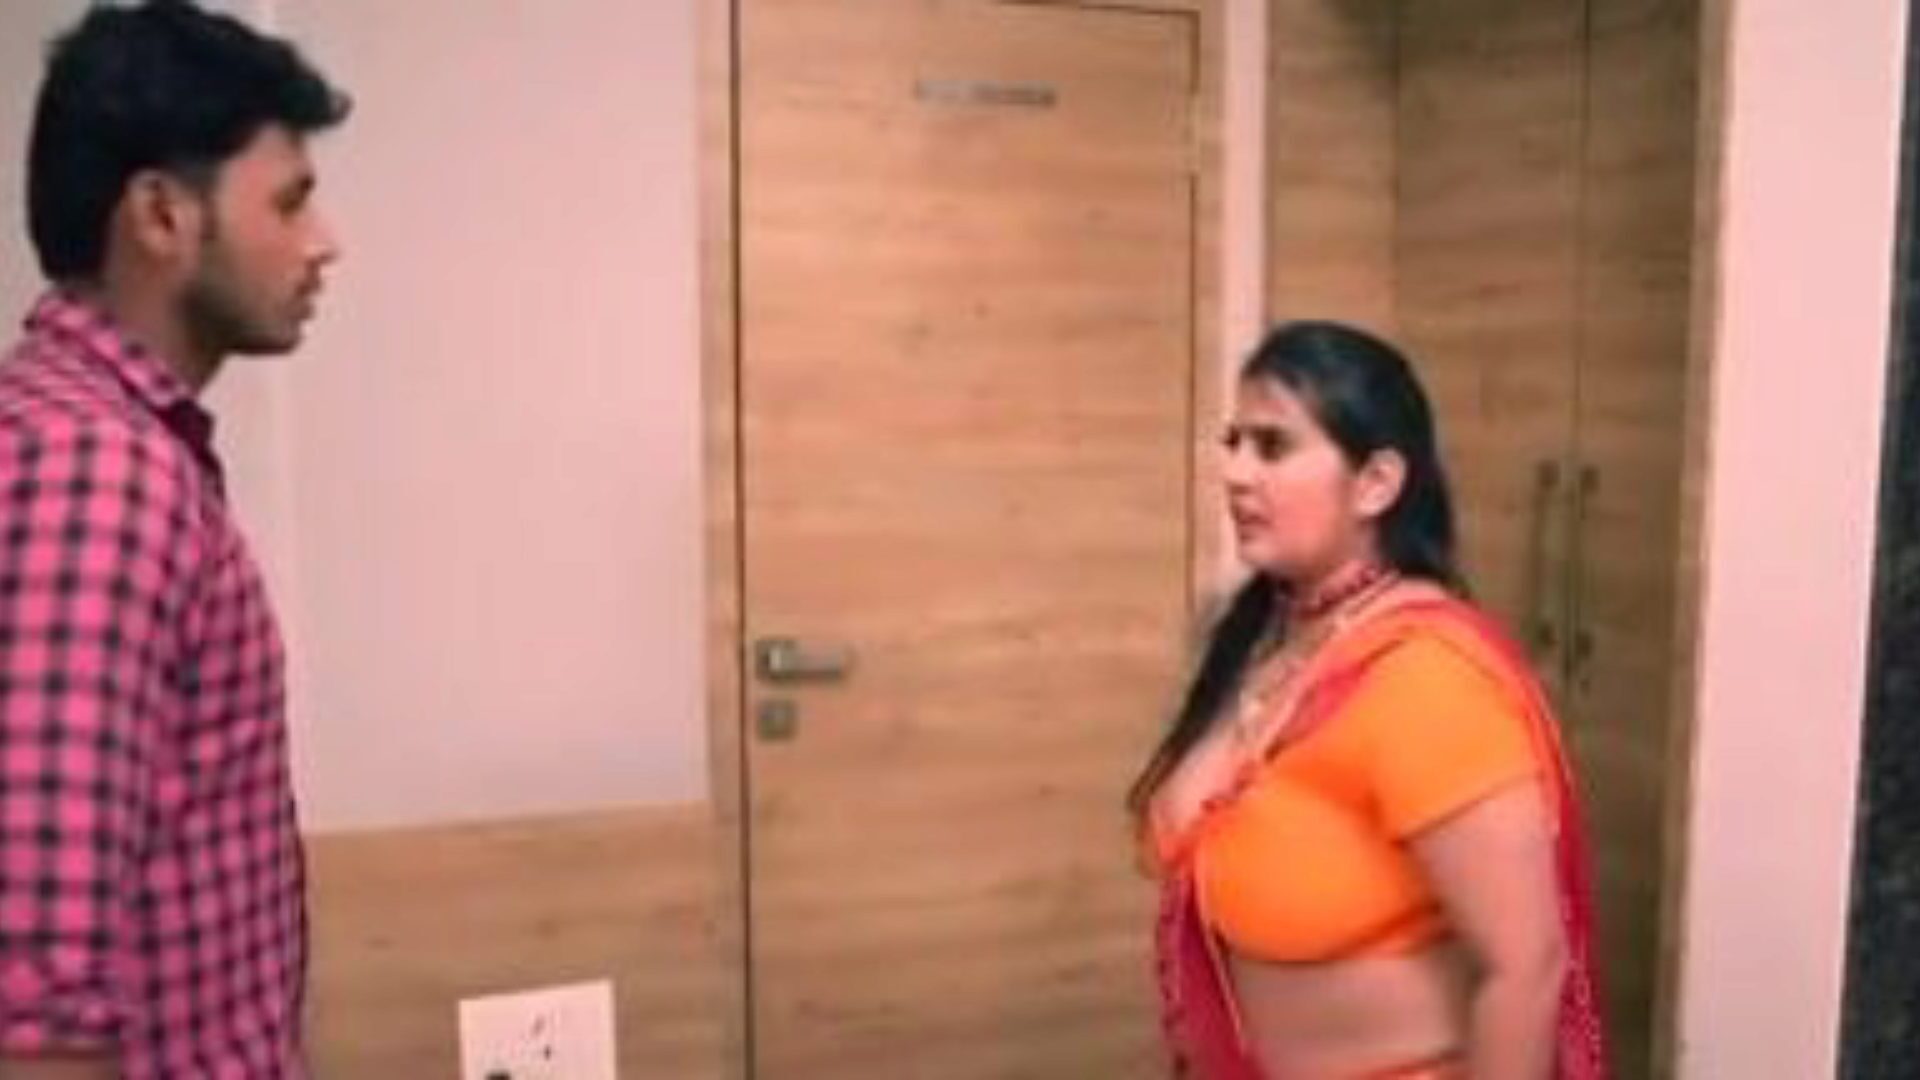 kanchan néni ep5: ingyenes néni xxx pornó videó 03 - xhamster karóra kanchan néni ep5 tube csókolózó film jelenet ingyen mindenki számára a xhamsteren, bangladesi néni xxx és néni mobil pornó film matricákkal